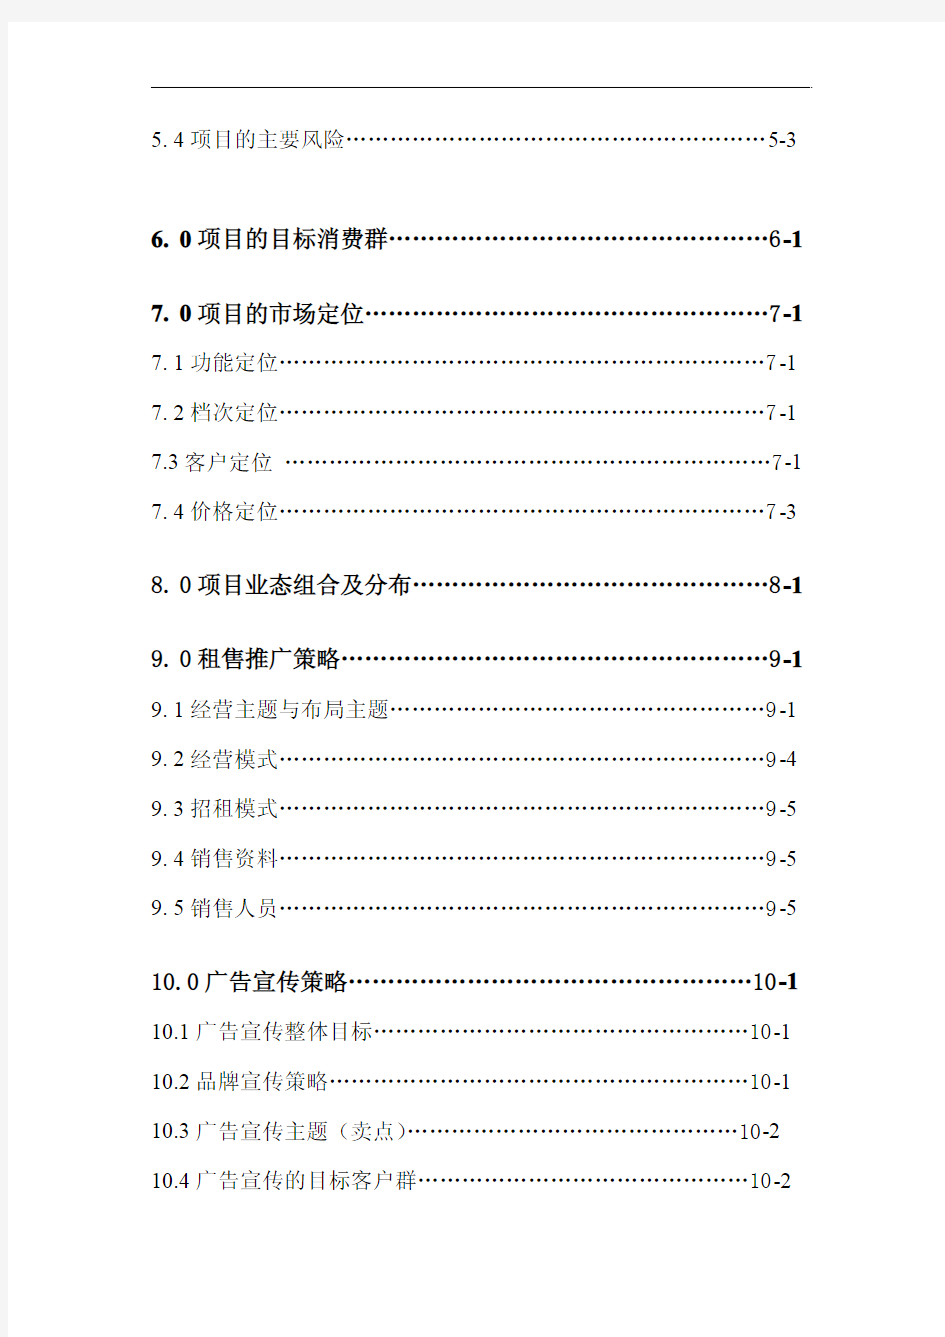 肇庆时代广场商场营销策划报告(2010年 52页)